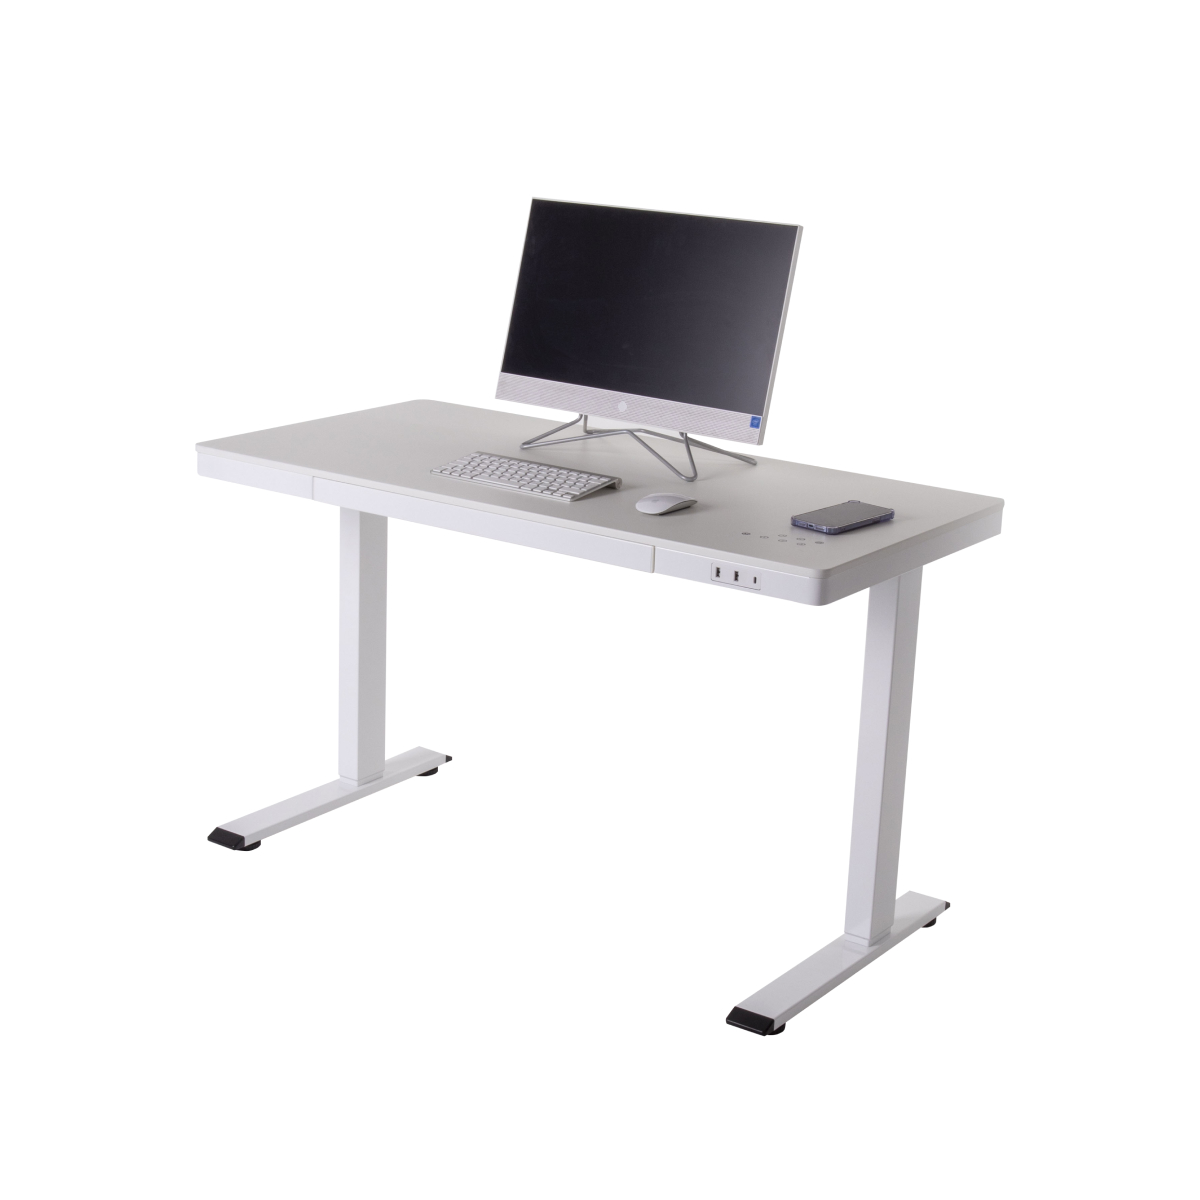 Стол письменный LuxAlto 17050 регулируемый МДФ, E4A, 140x70 см